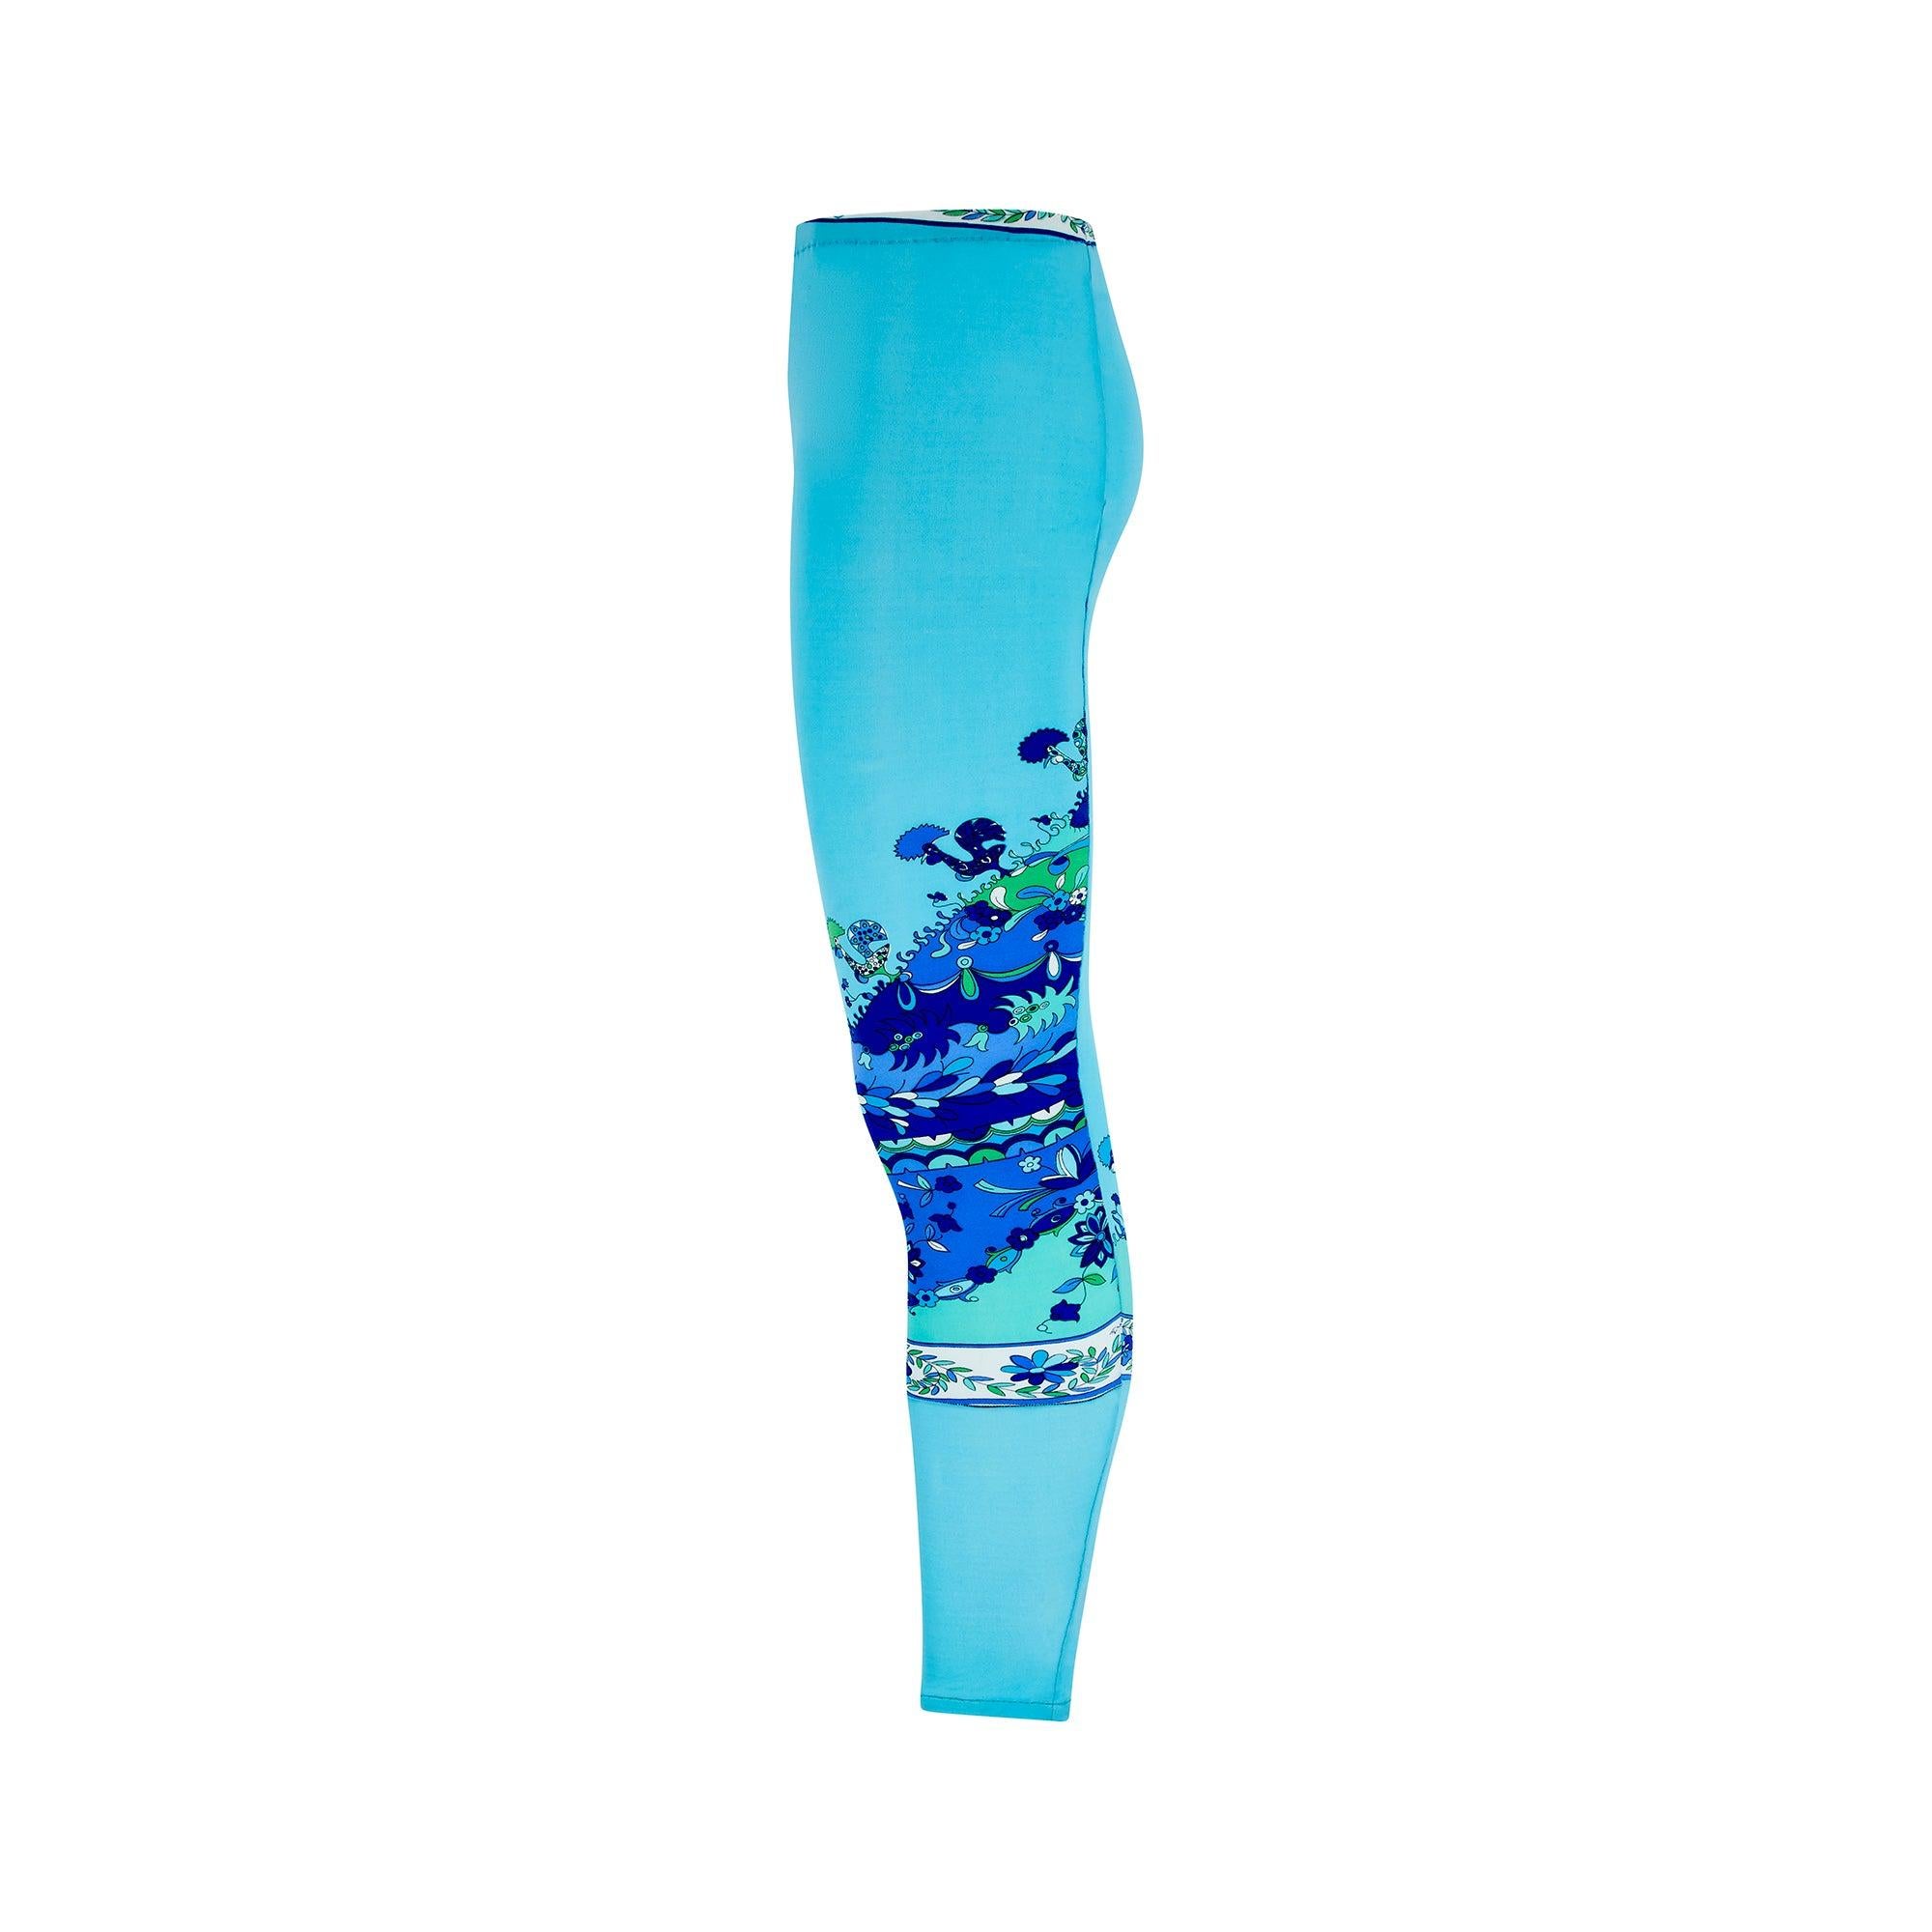 Diese Pucci-Leggings aus den späten 1960er Jahren sind so lebendig wie an dem Tag, an dem sie gemacht wurden. In auffälligem Türkisblau mit dem charakteristischen psychedelischen Pucci-Print mit Blumen in Lila-, Blau- und Grüntönen, die an den